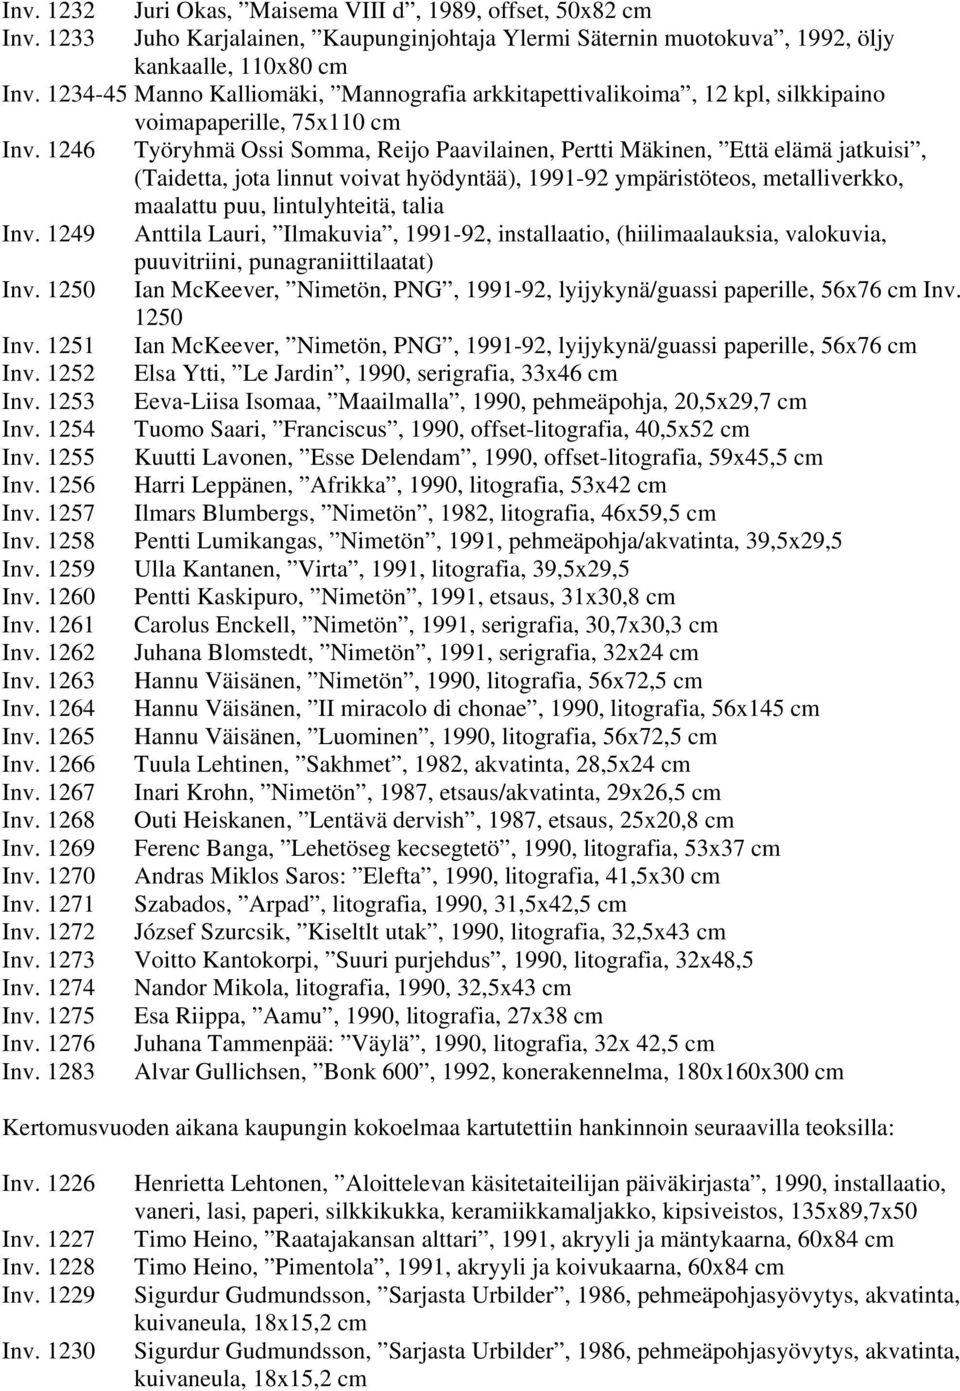 1246 Työryhmä Ossi Somma, Reijo Paavilainen, Pertti Mäkinen, Että elämä jatkuisi, (Taidetta, jota linnut voivat hyödyntää), 1991-92 ympäristöteos, metalliverkko, maalattu puu, lintulyhteitä, talia